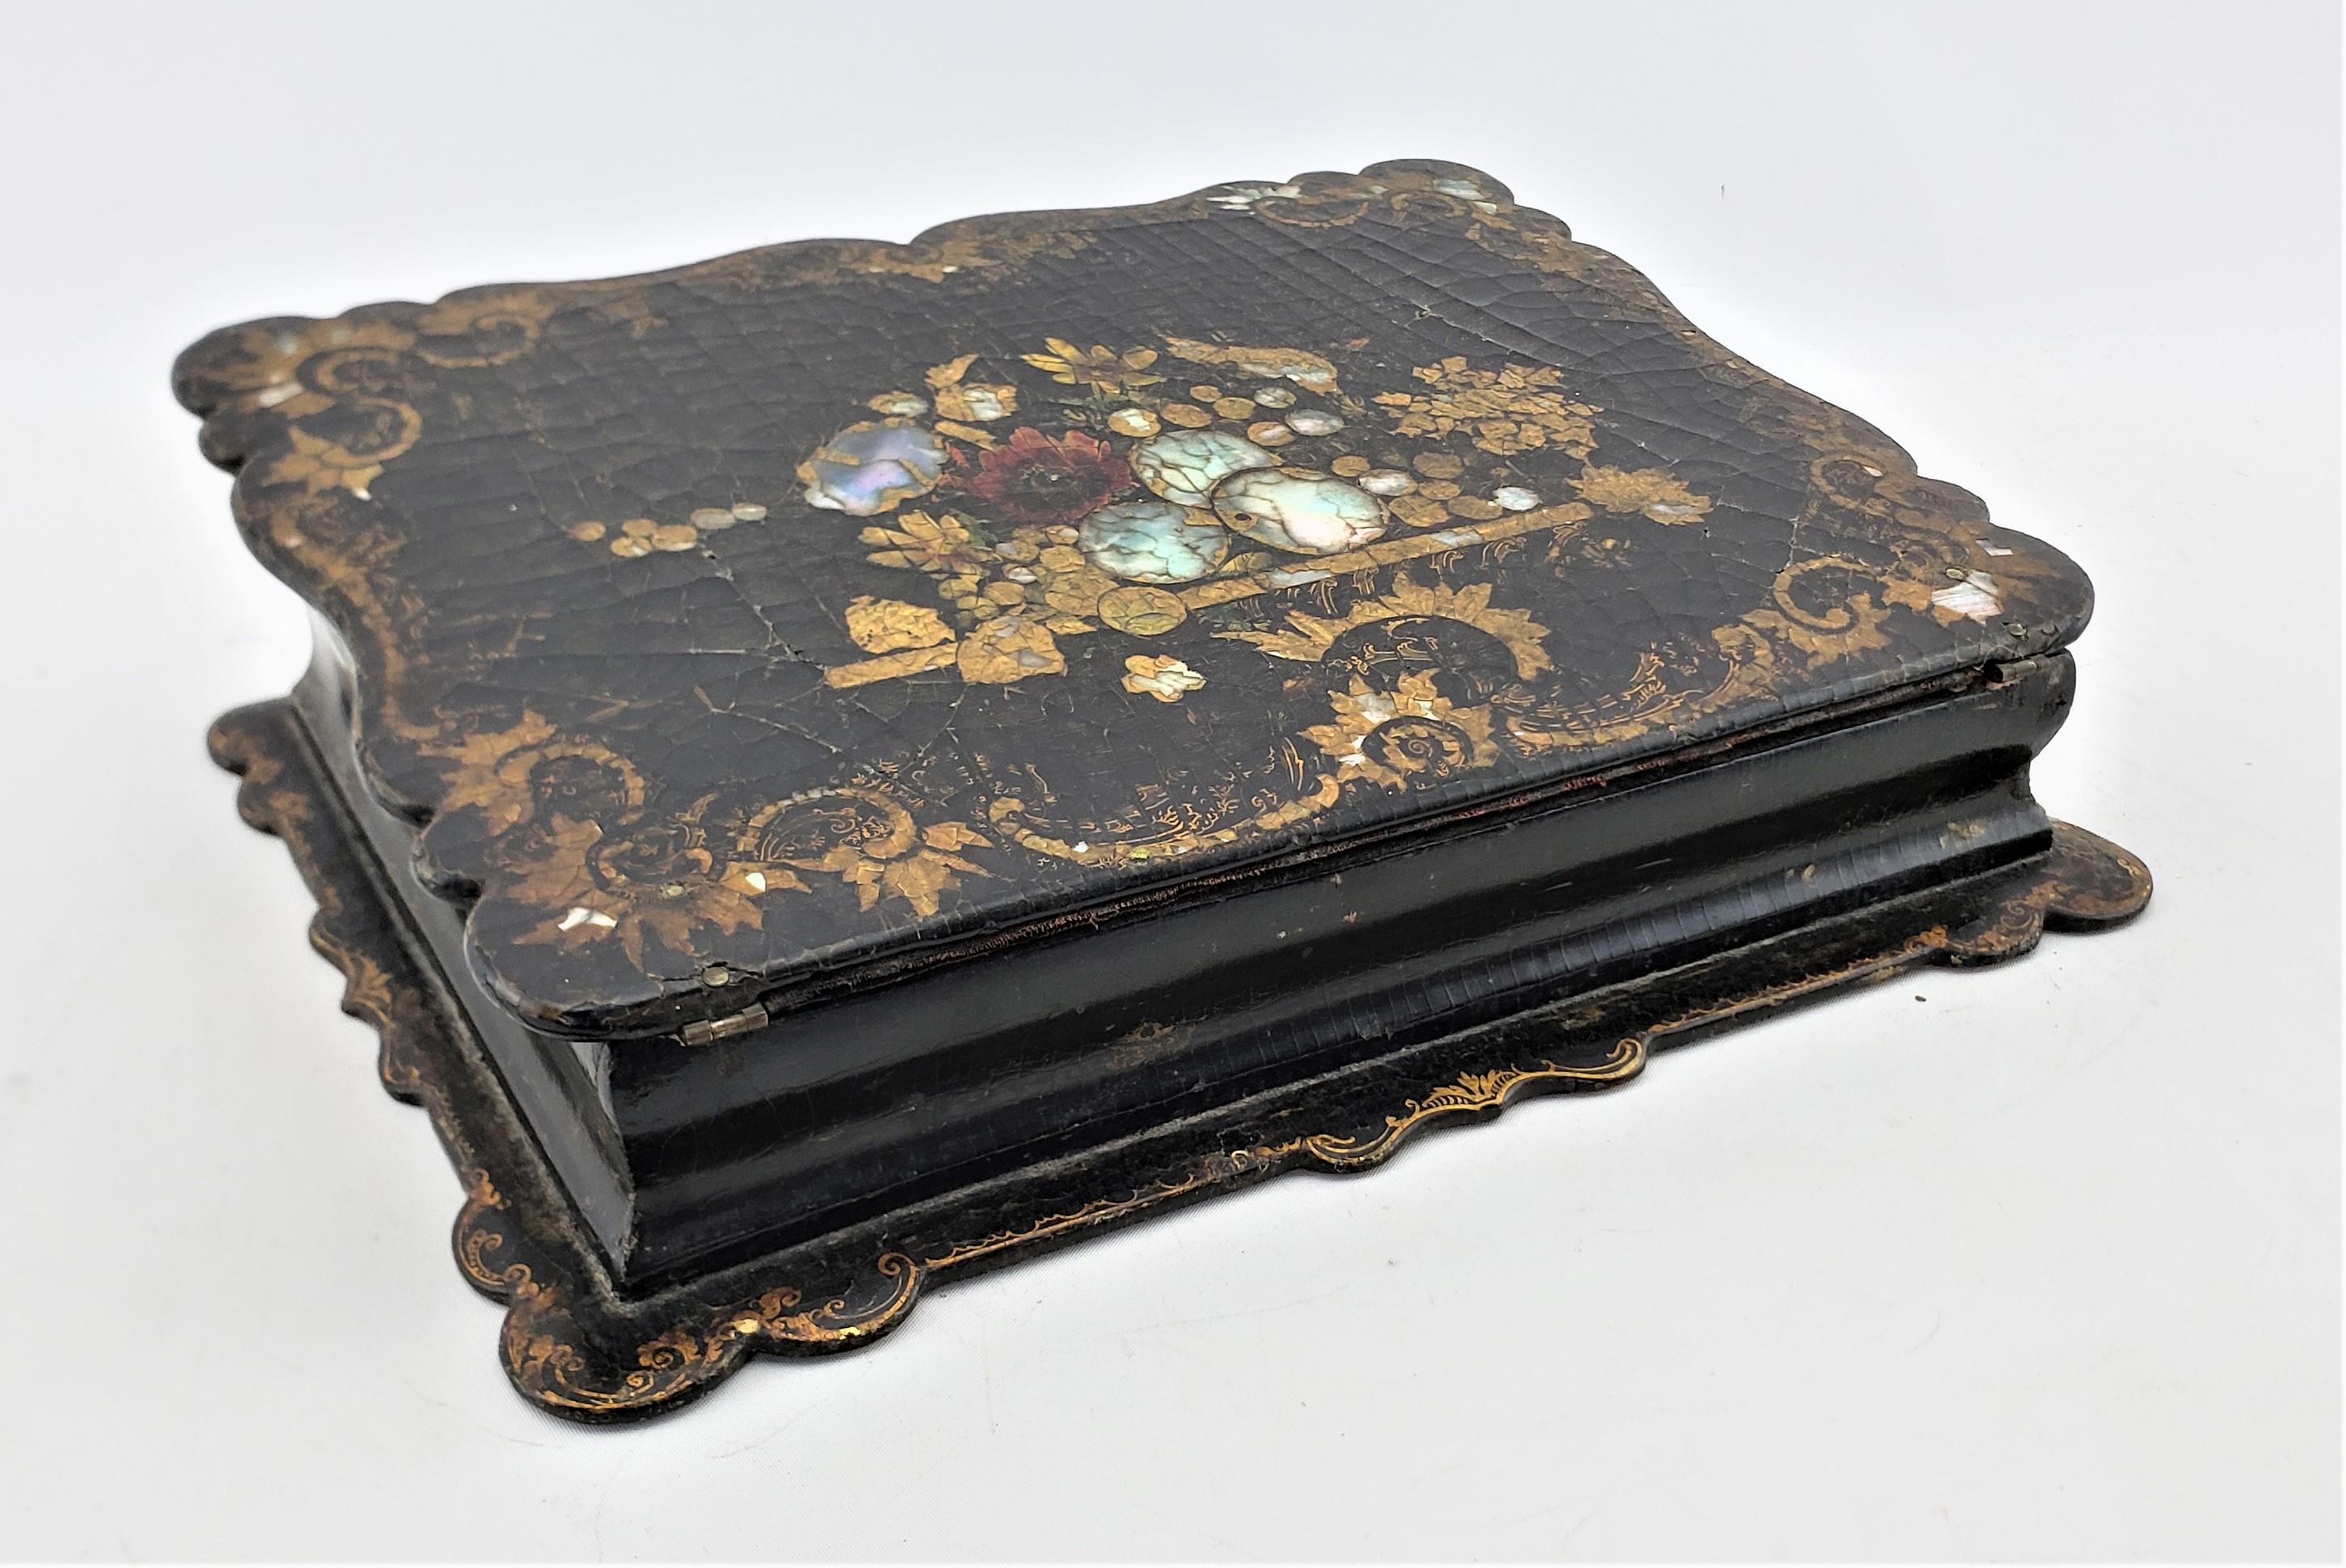 Cette boîte à écrire ou bureau antique a été fabriquée par la très renommée société Jennens & Bettridge d'Angleterre vers 1880, dans le style victorien de l'époque. La boîte est fabriquée en papier mâché qui a été traité avec une finition laquée ou